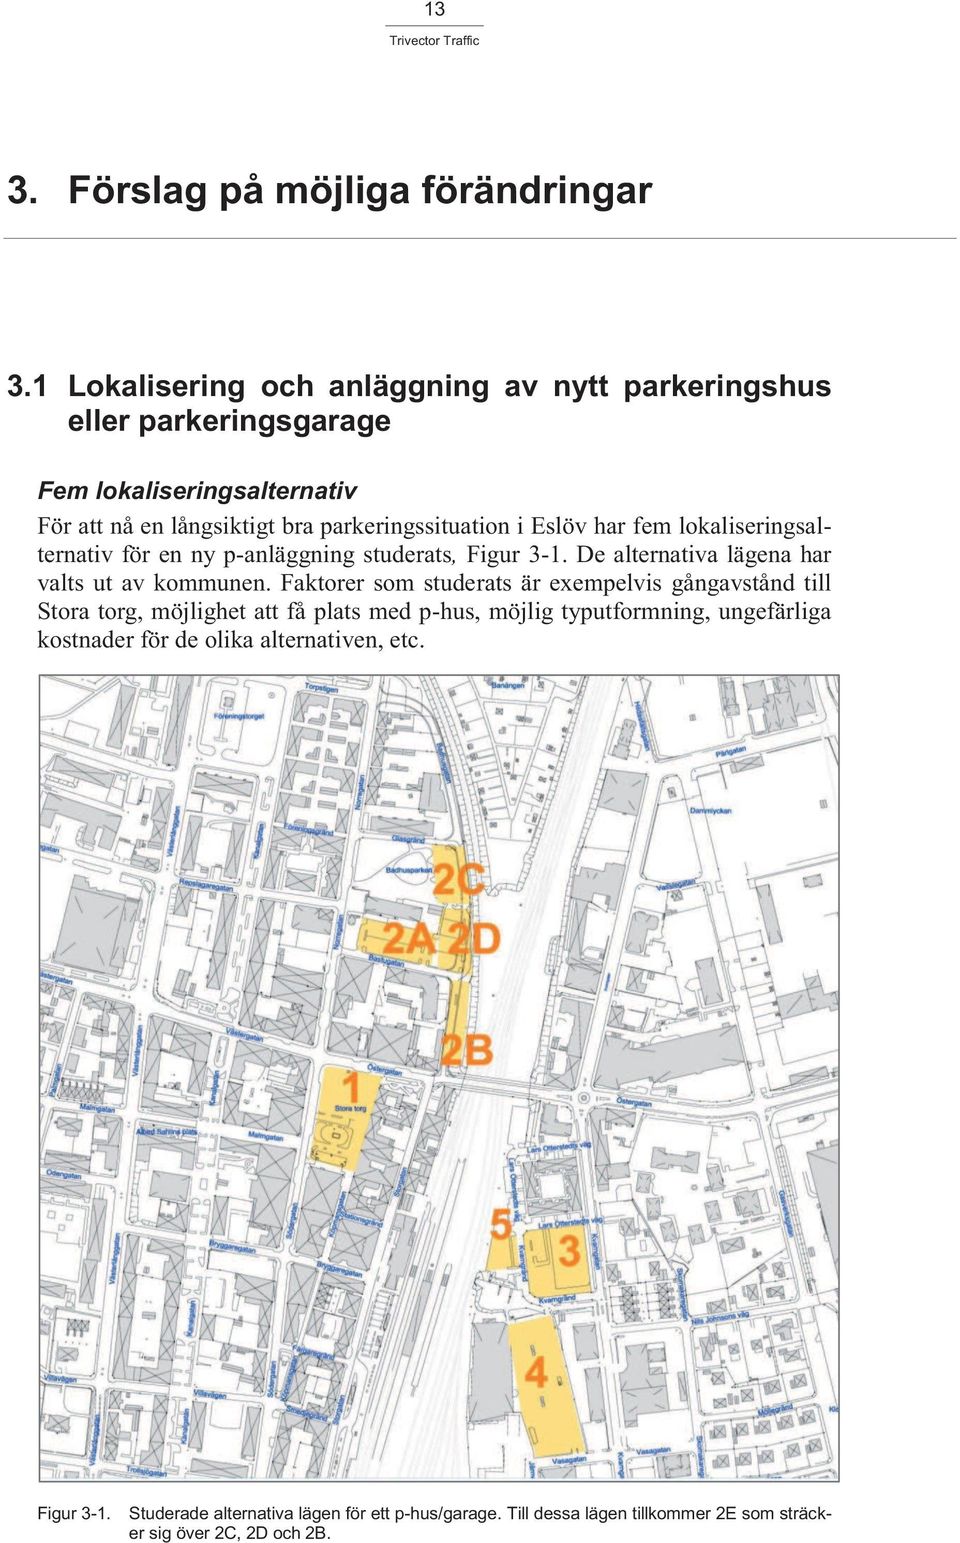 Eslöv har fem lokaliseringsalternativ för en ny p-anläggning studerats, Figur 3-1. De alternativa lägena har valts ut av kommunen.